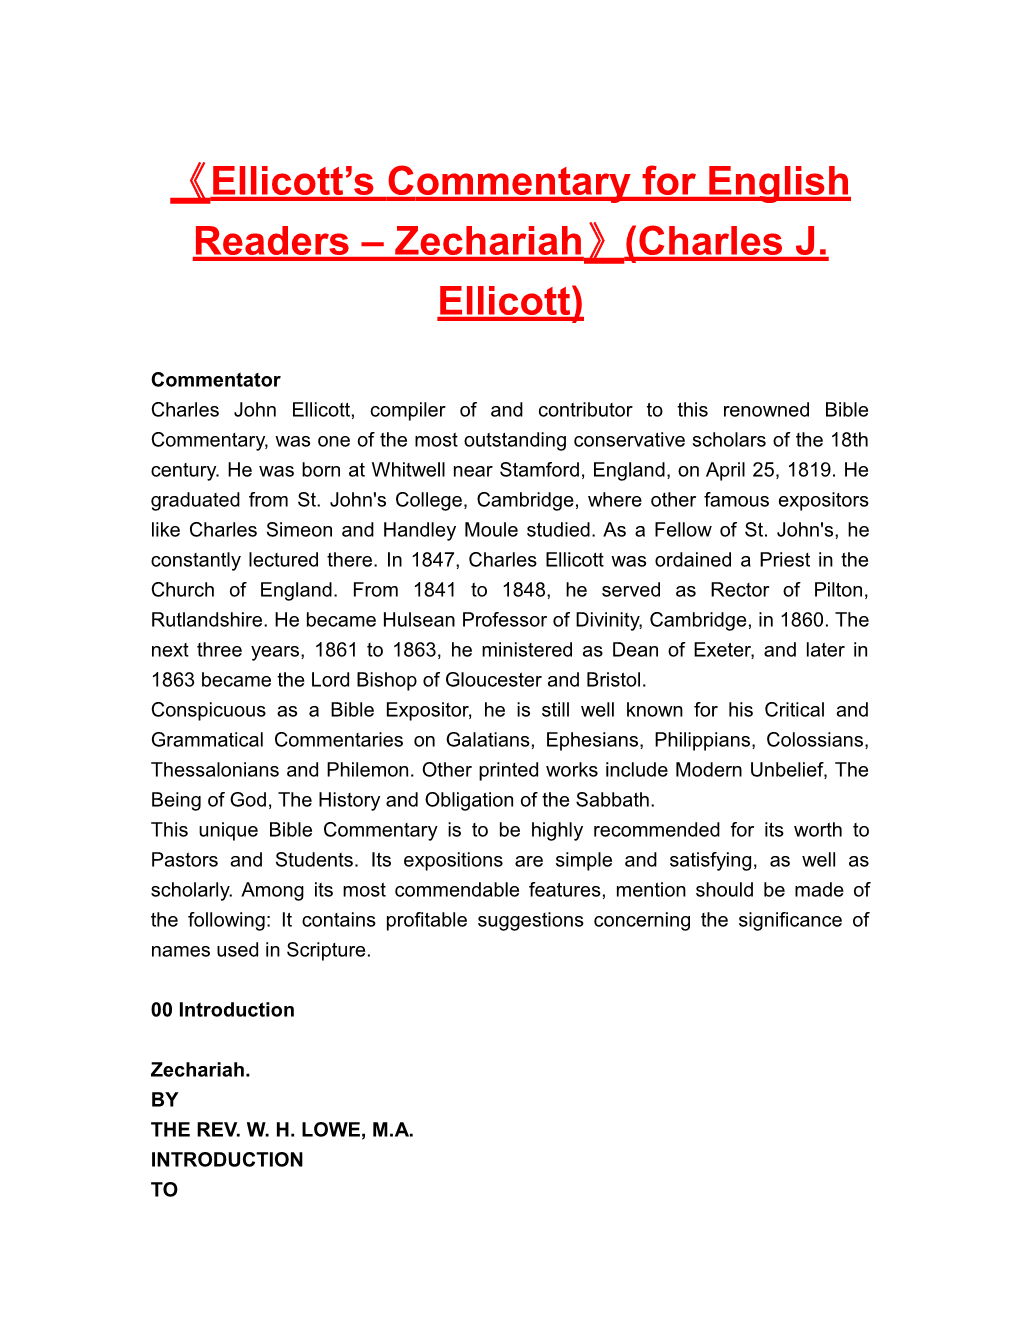 Ellicott Scommentary for English Readers Zechariah (Charles J. Ellicott)